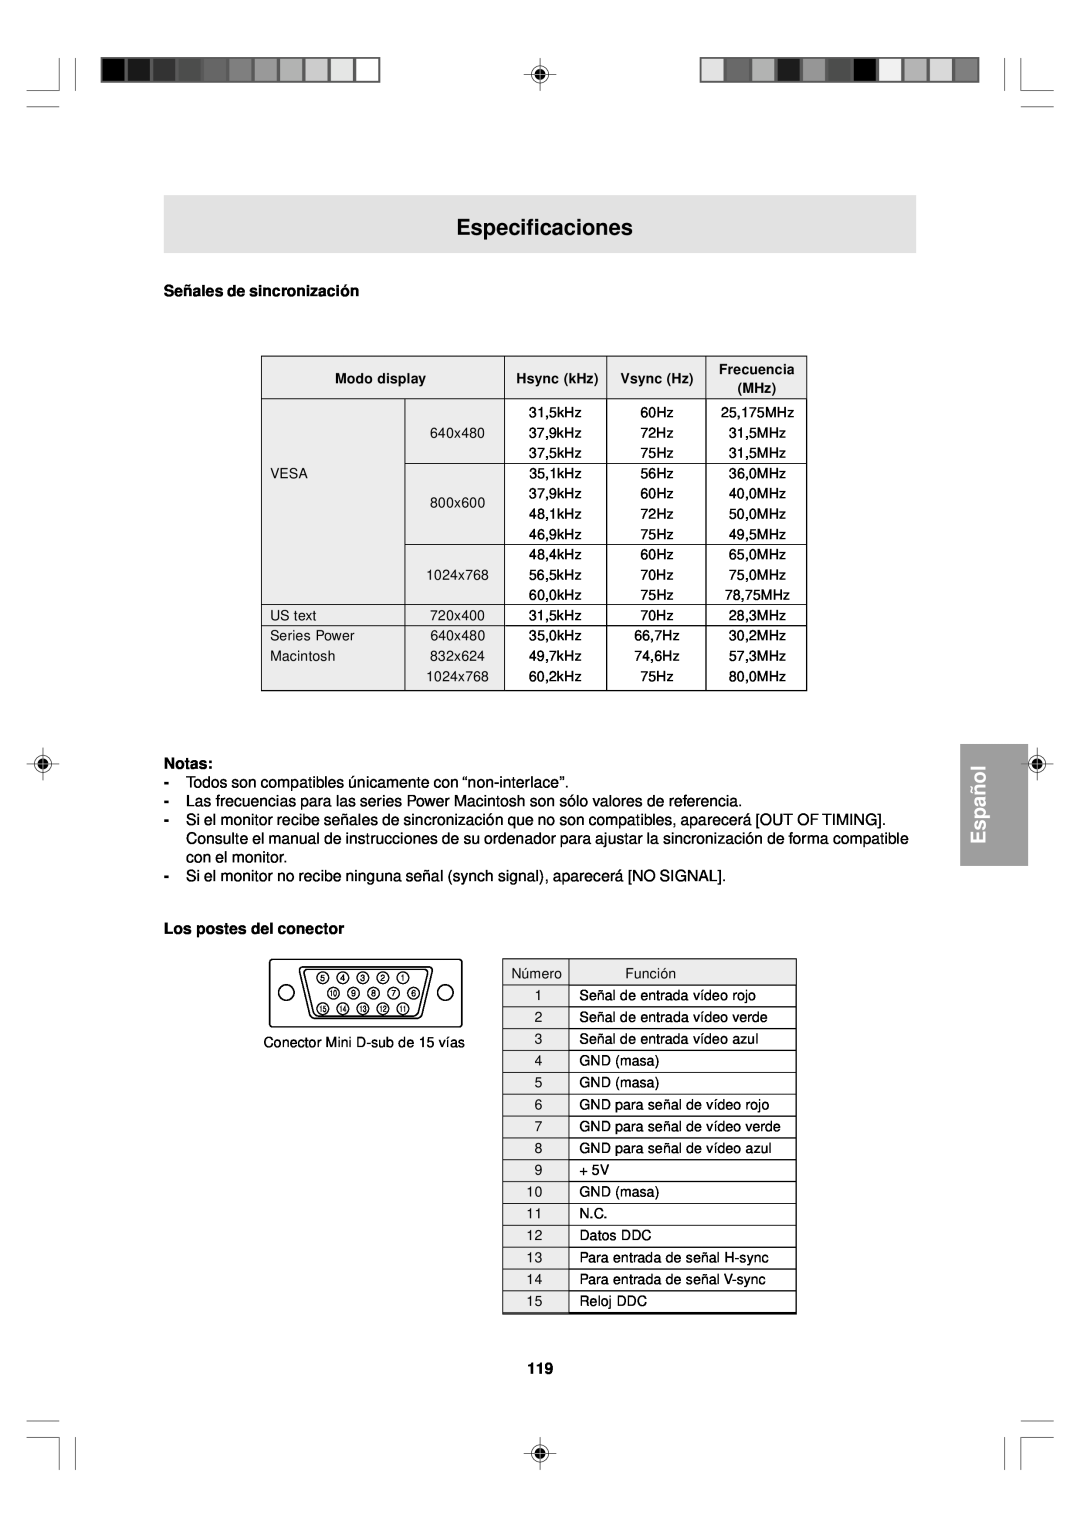 Sharp LL-T15V1 operation manual Especificaciones, Señales de sincronización, Los postes del conector, Español, Notas 